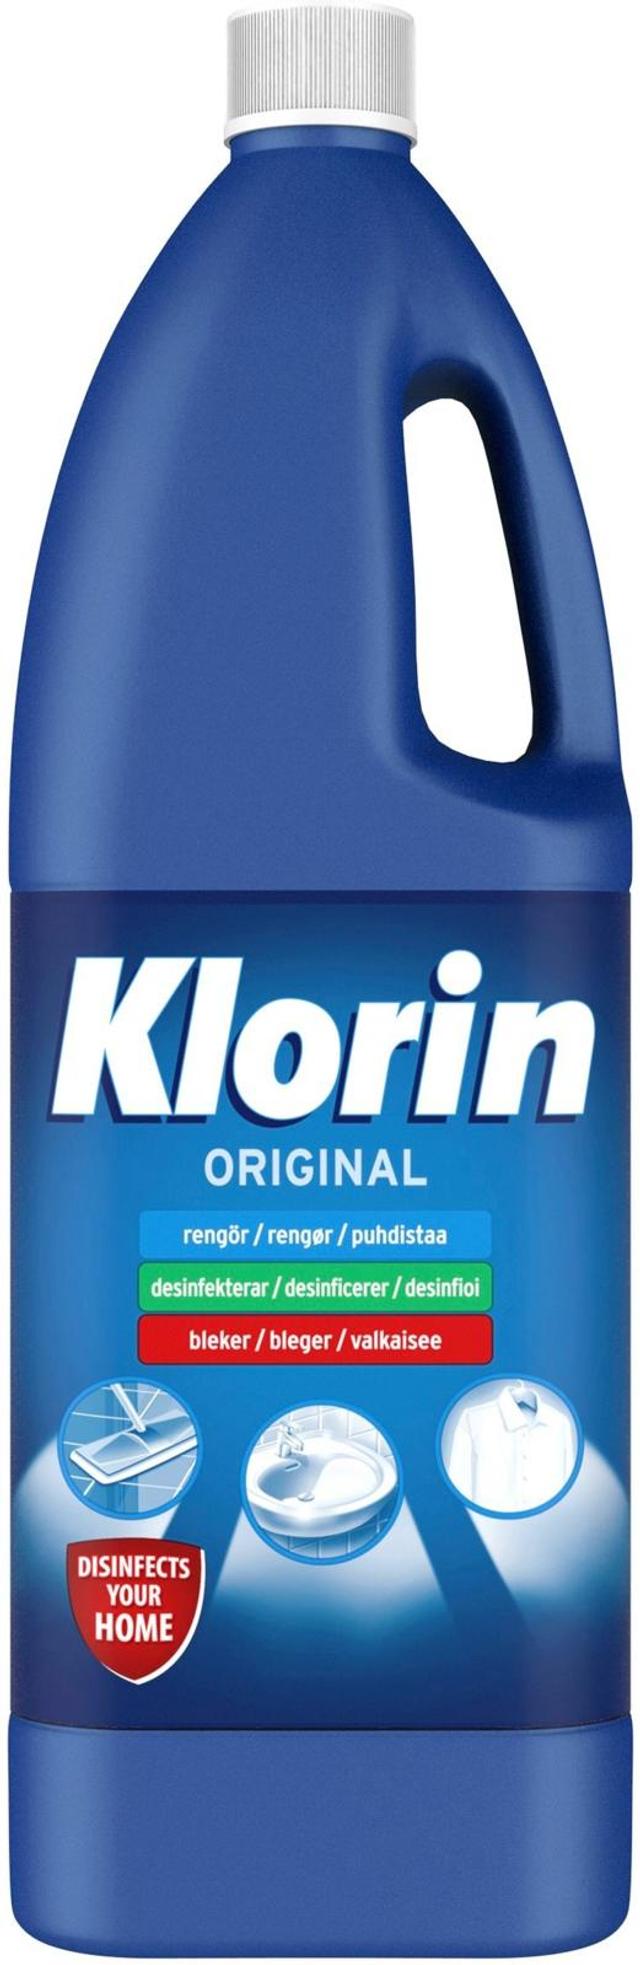 Klorin Original valkaisu- ja desinfiointiaine 1500ml